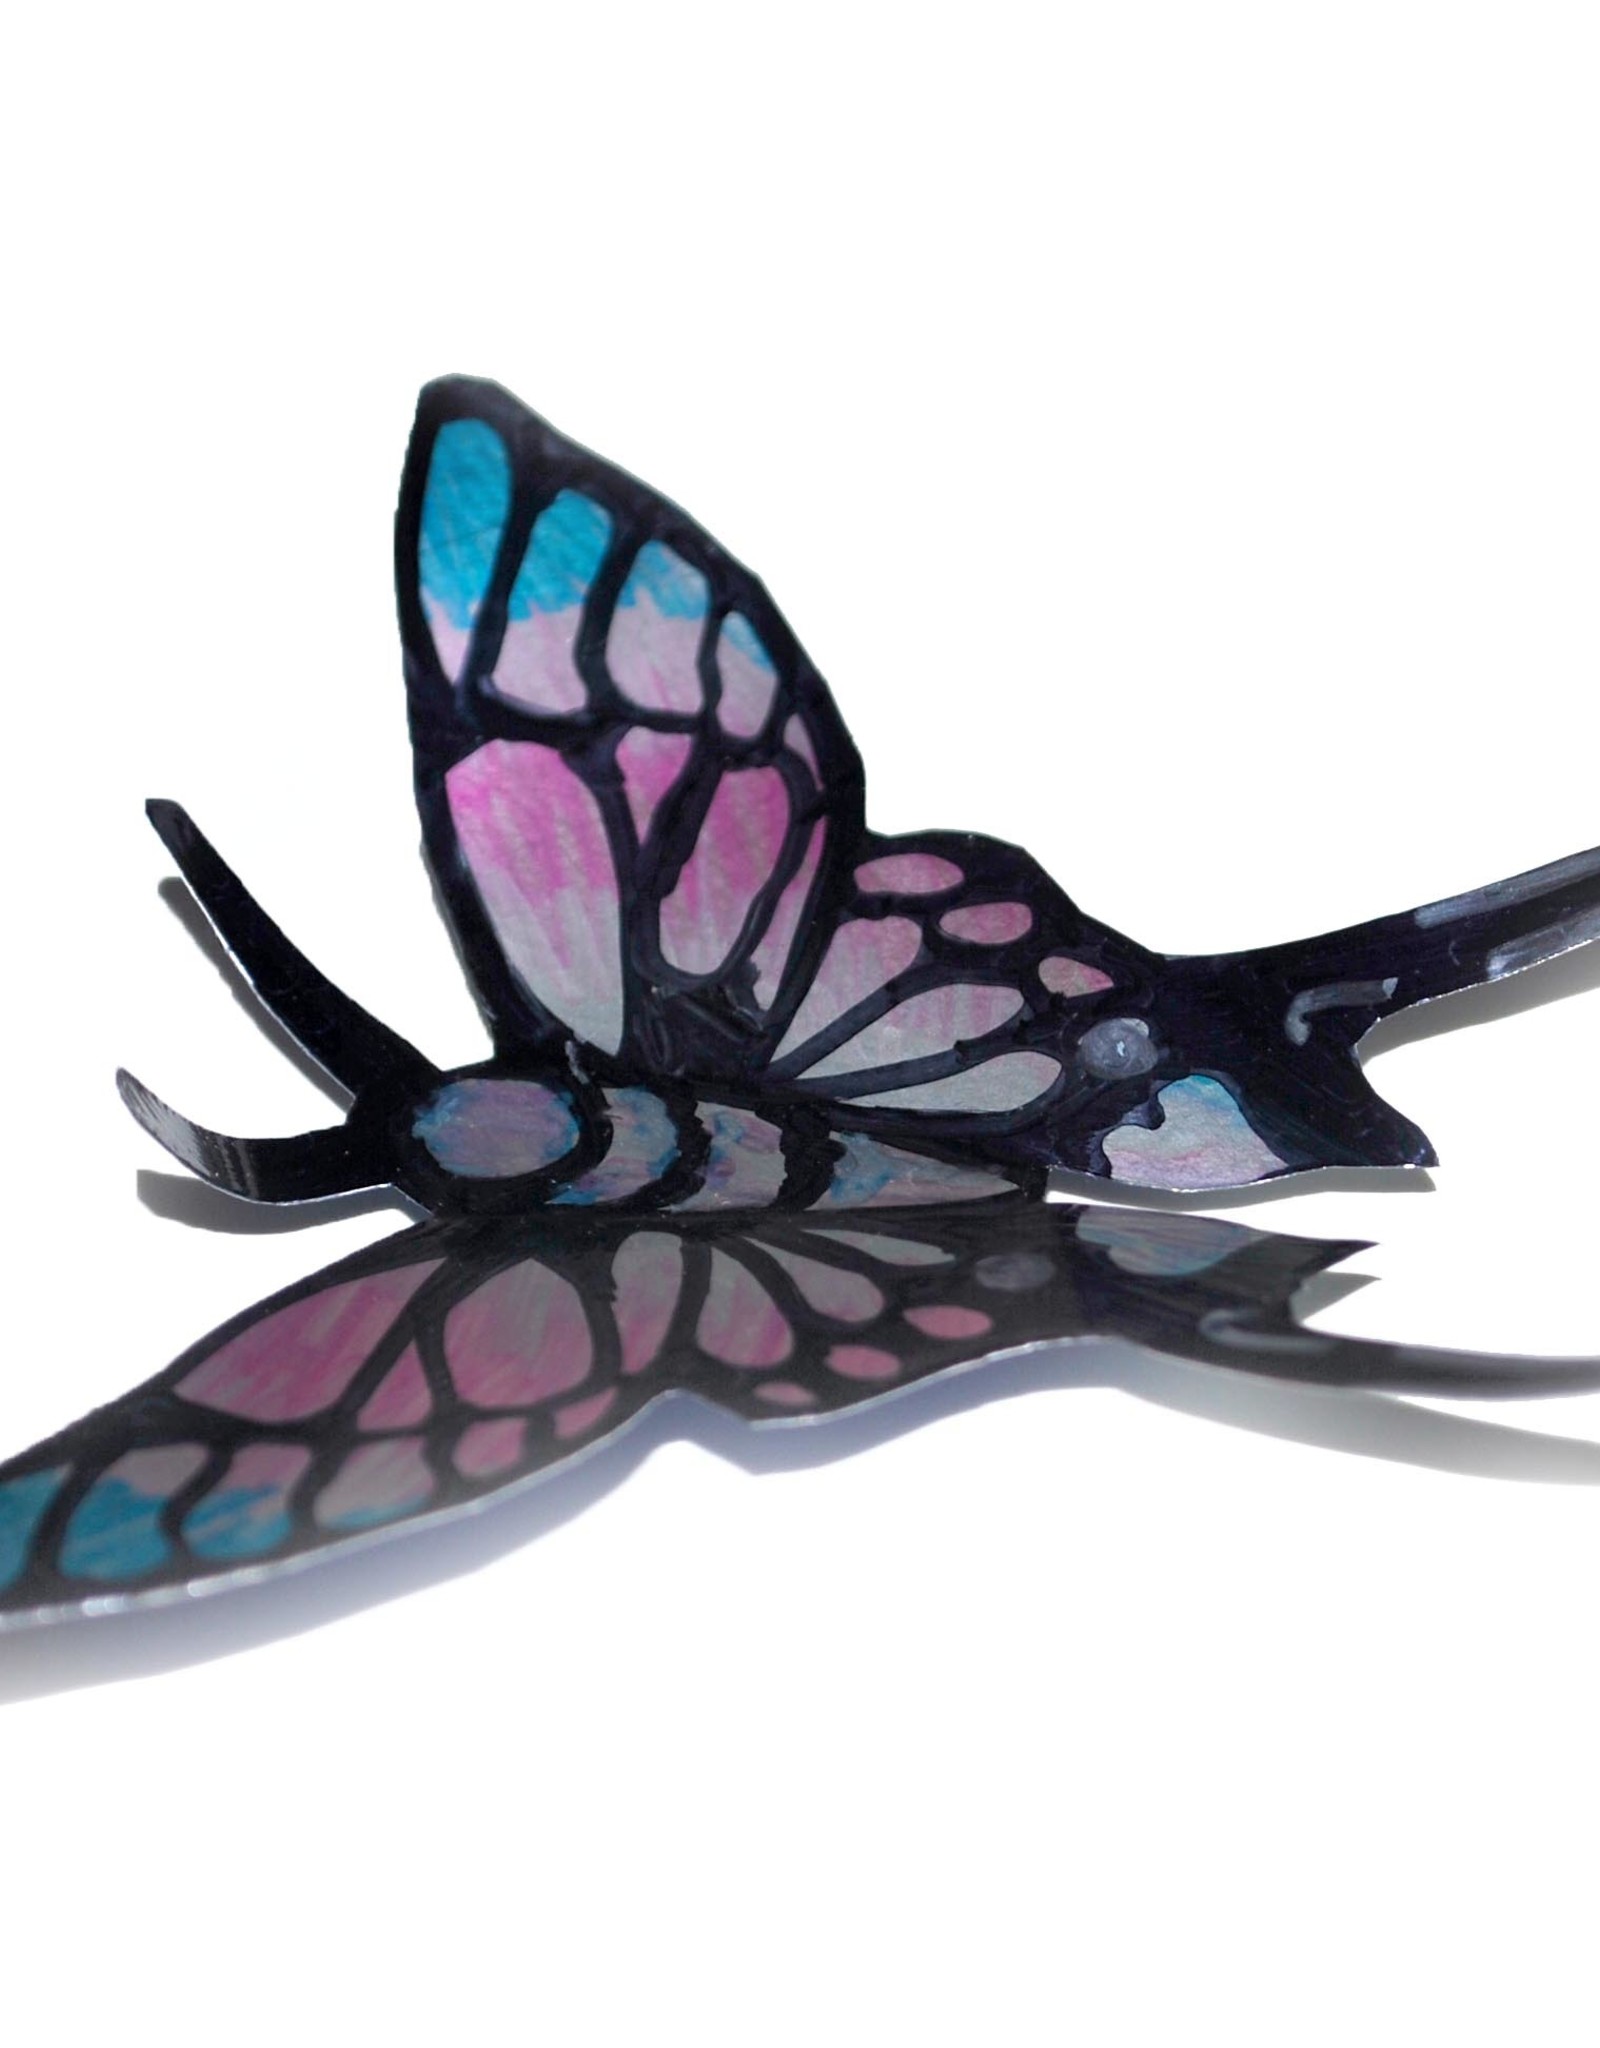 Sophia Abel “Soda Can Butterfly” Magnet by Sophia Abel